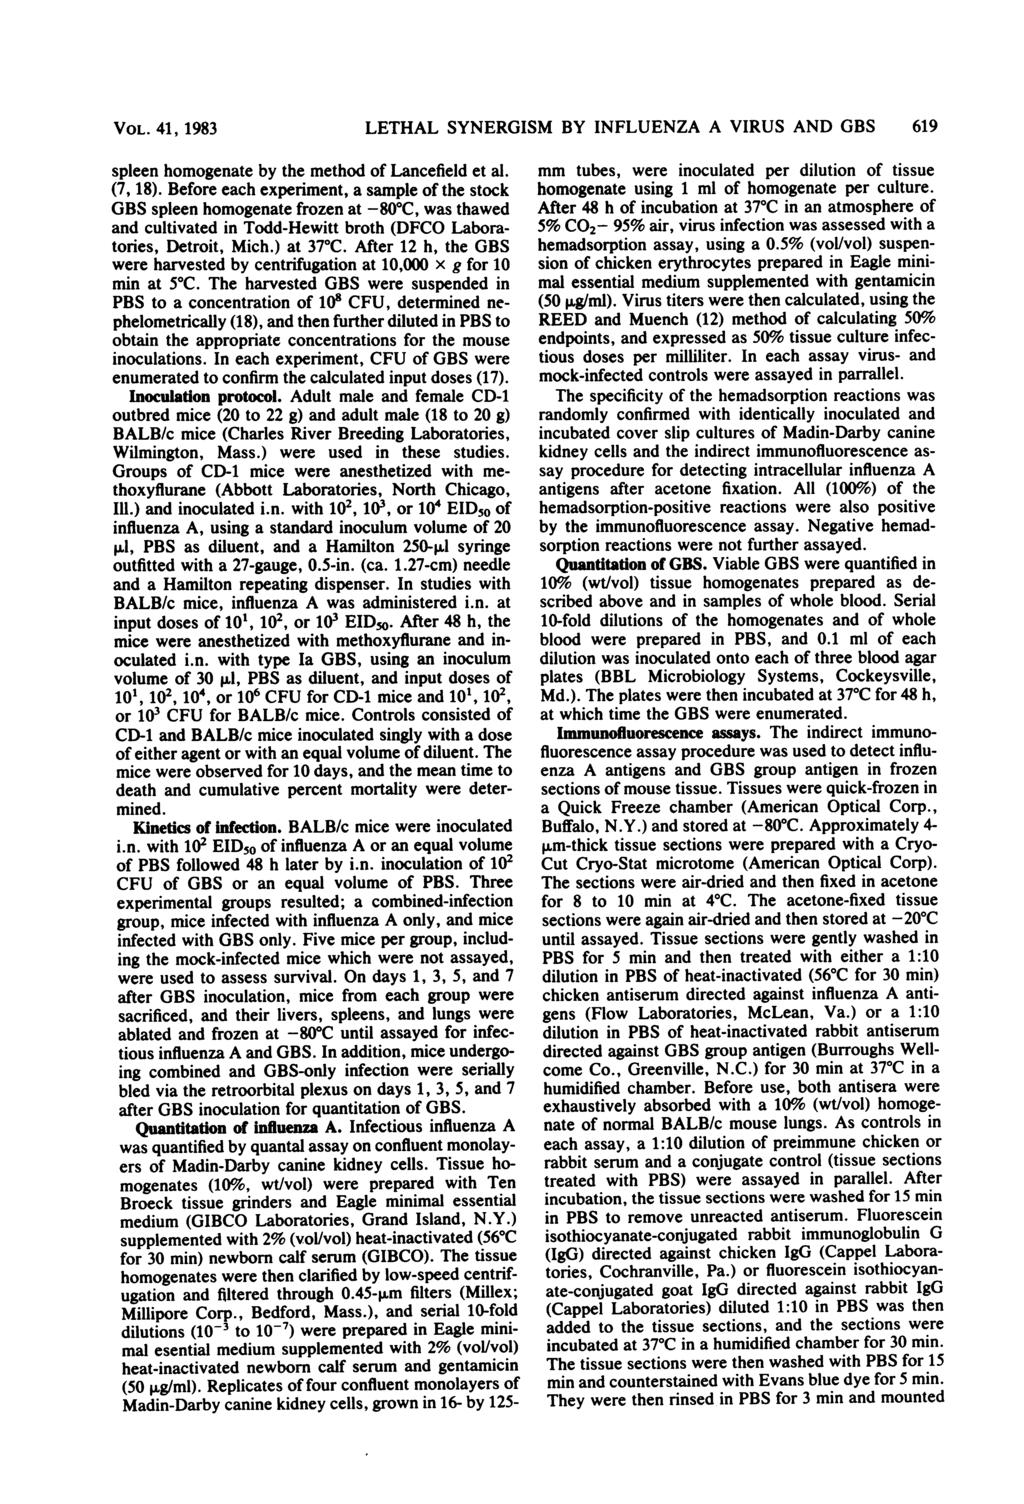 VOL. 41, 1983 spleen homogenate by the method of Lancefield et al. (7, 18).